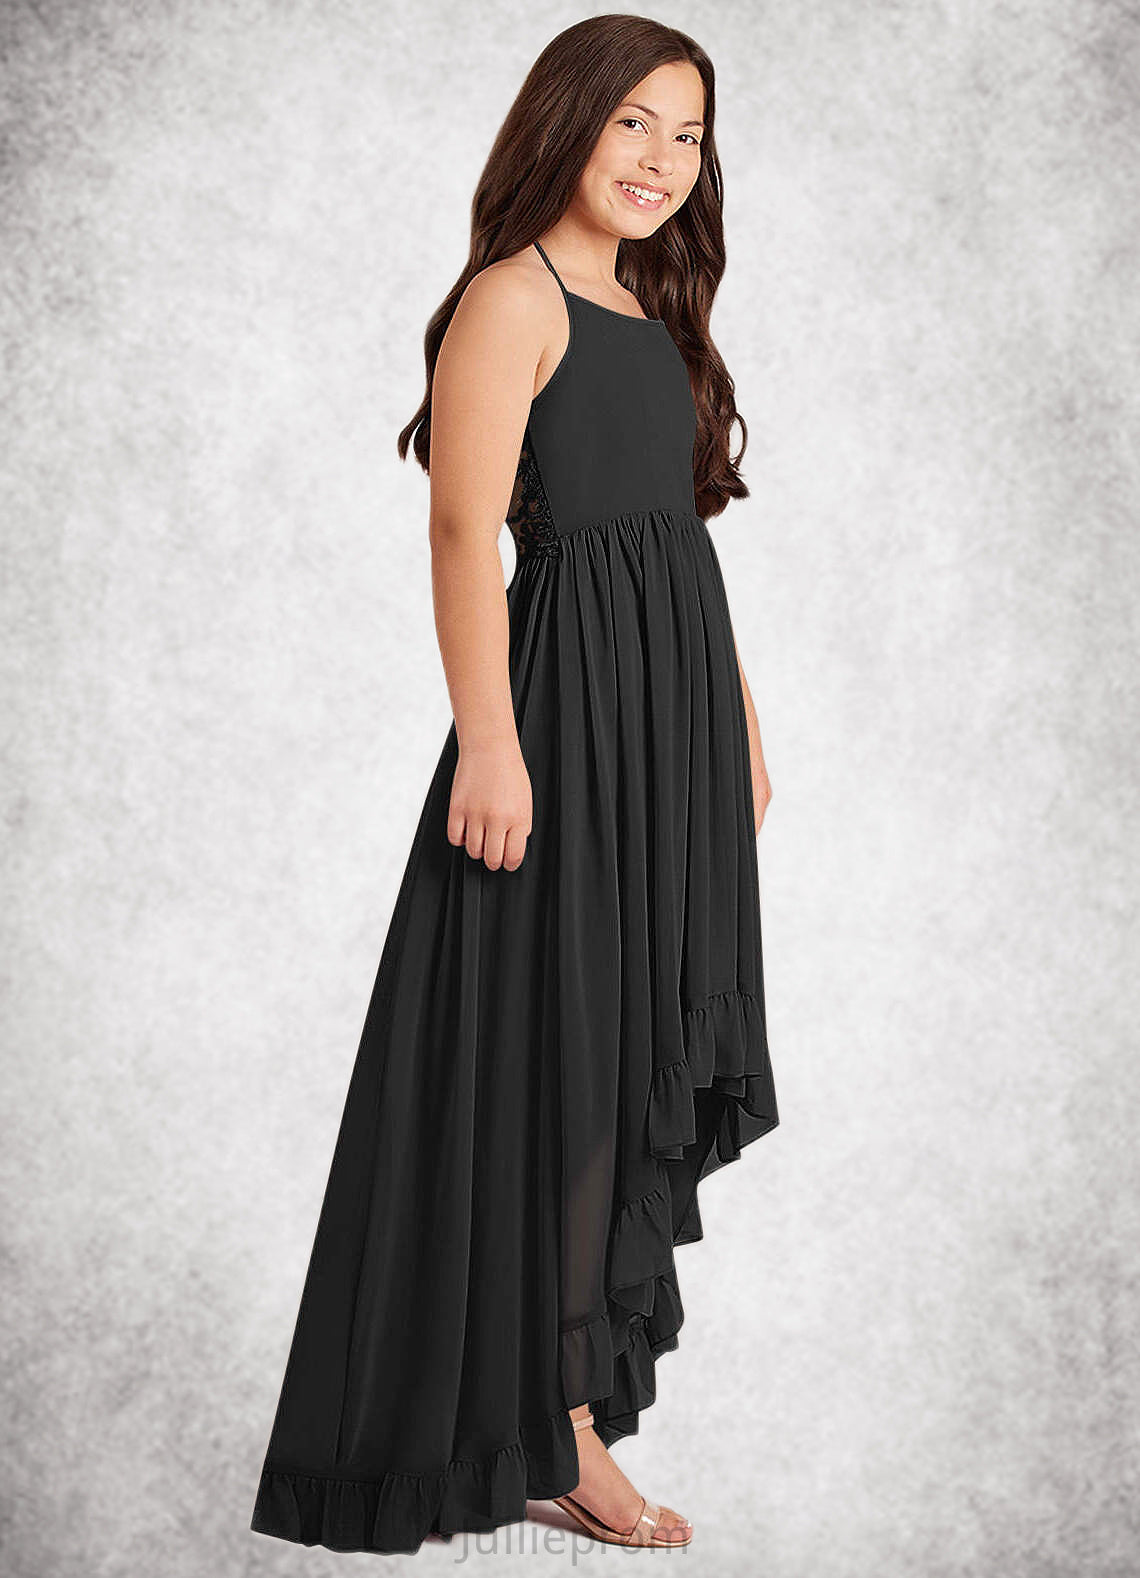 Nathalia A-Line Lace Chiffon Asymmetrical Junior Bridesmaid Dress black DQP0022855